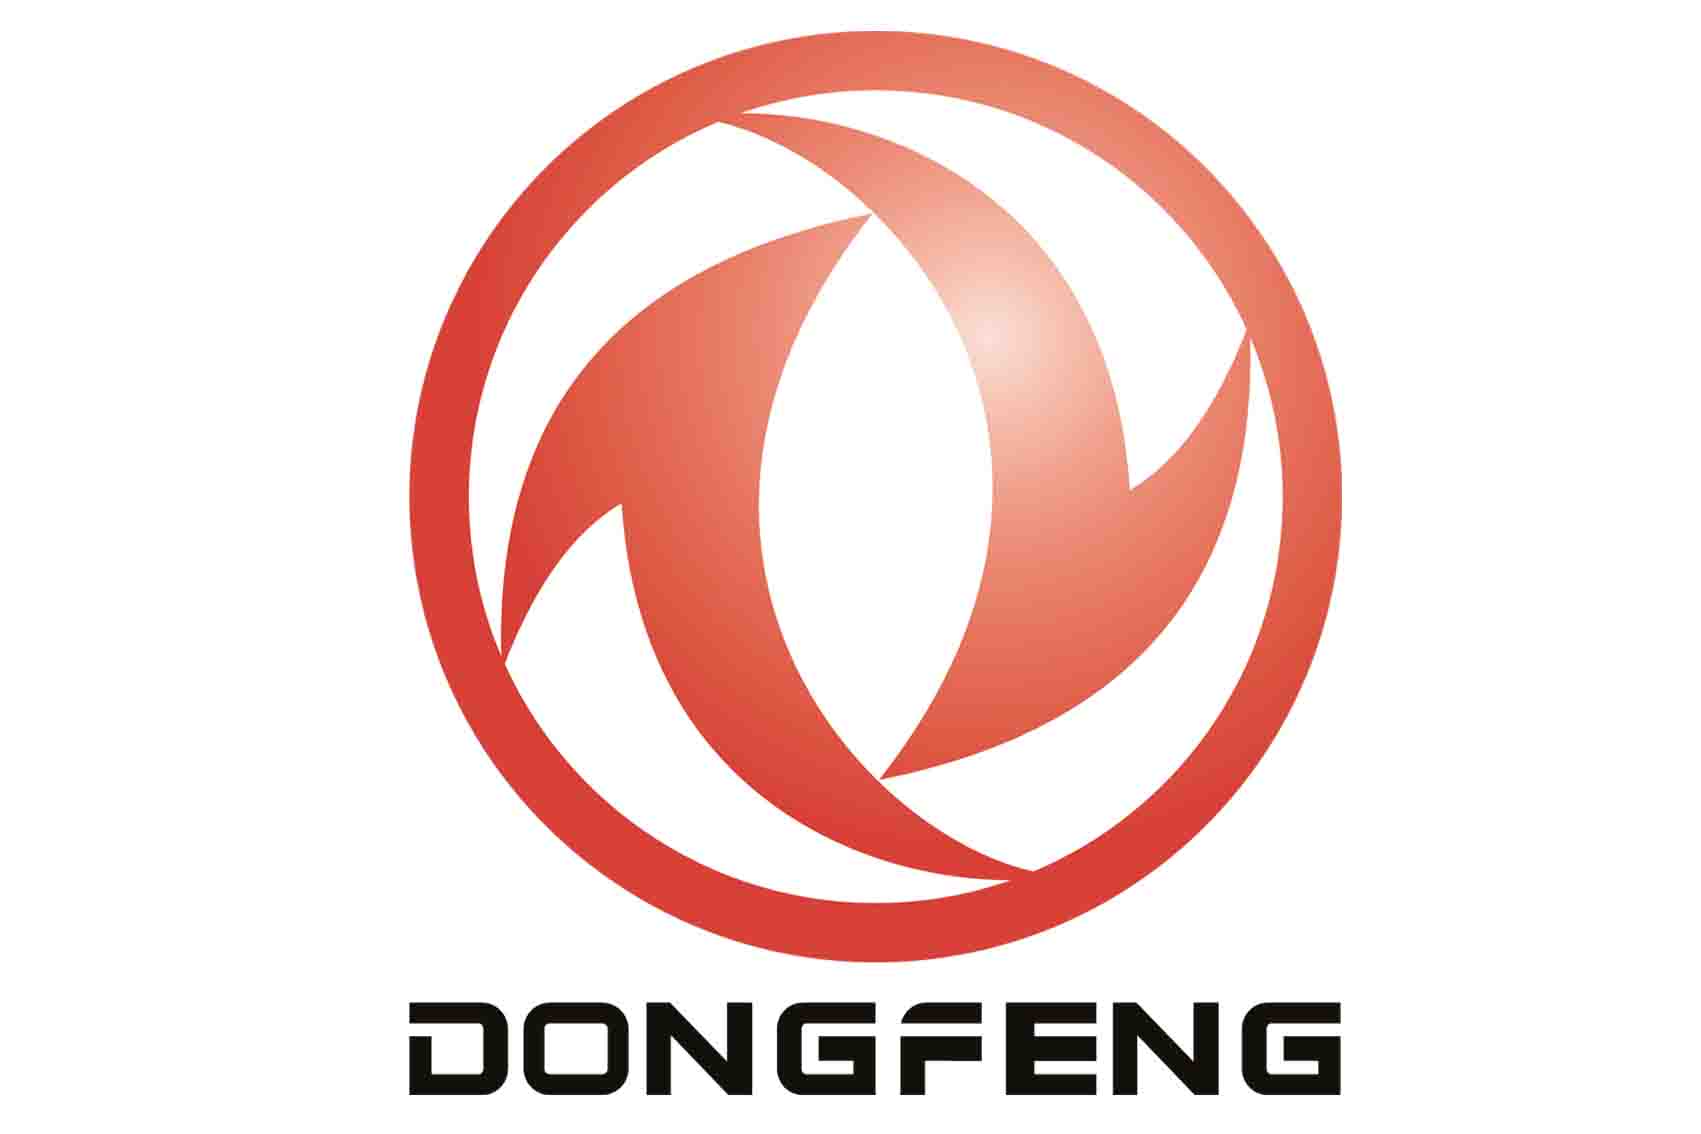 Dàn lạnh DongFeng / Giàn lanh DongFeng